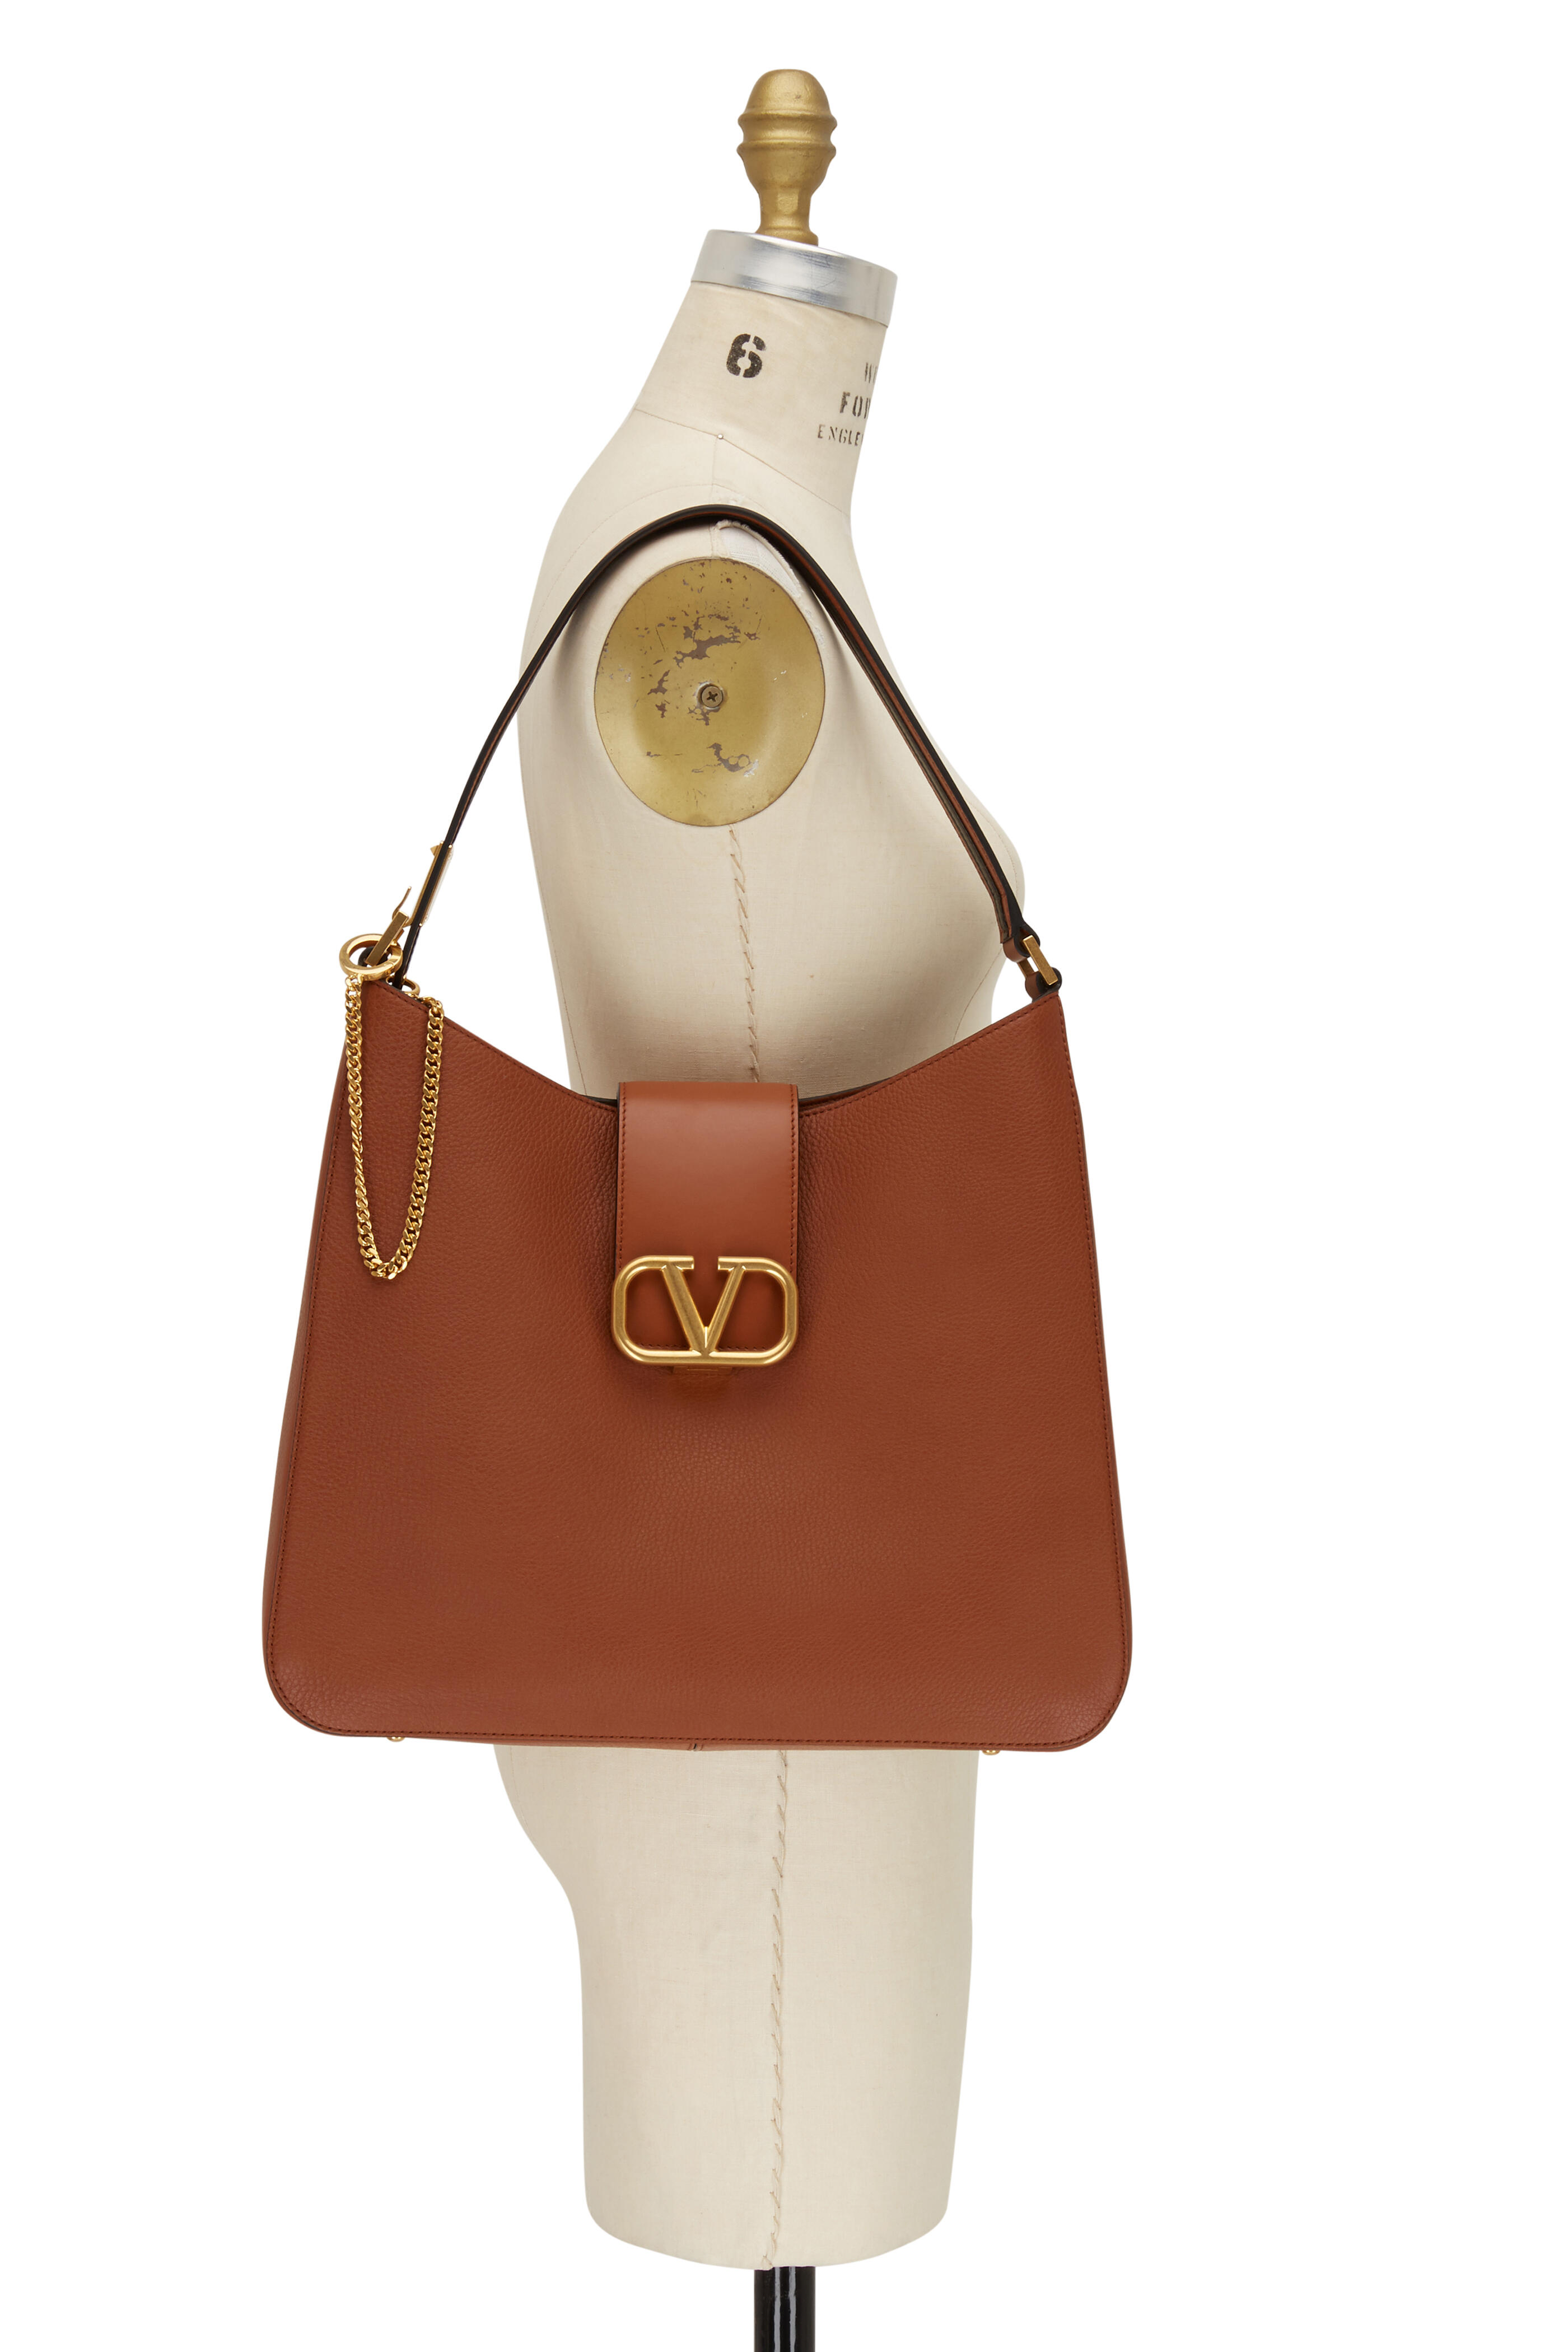 Valentino Garavani VSLING bag. Small textured leather shoulder bag